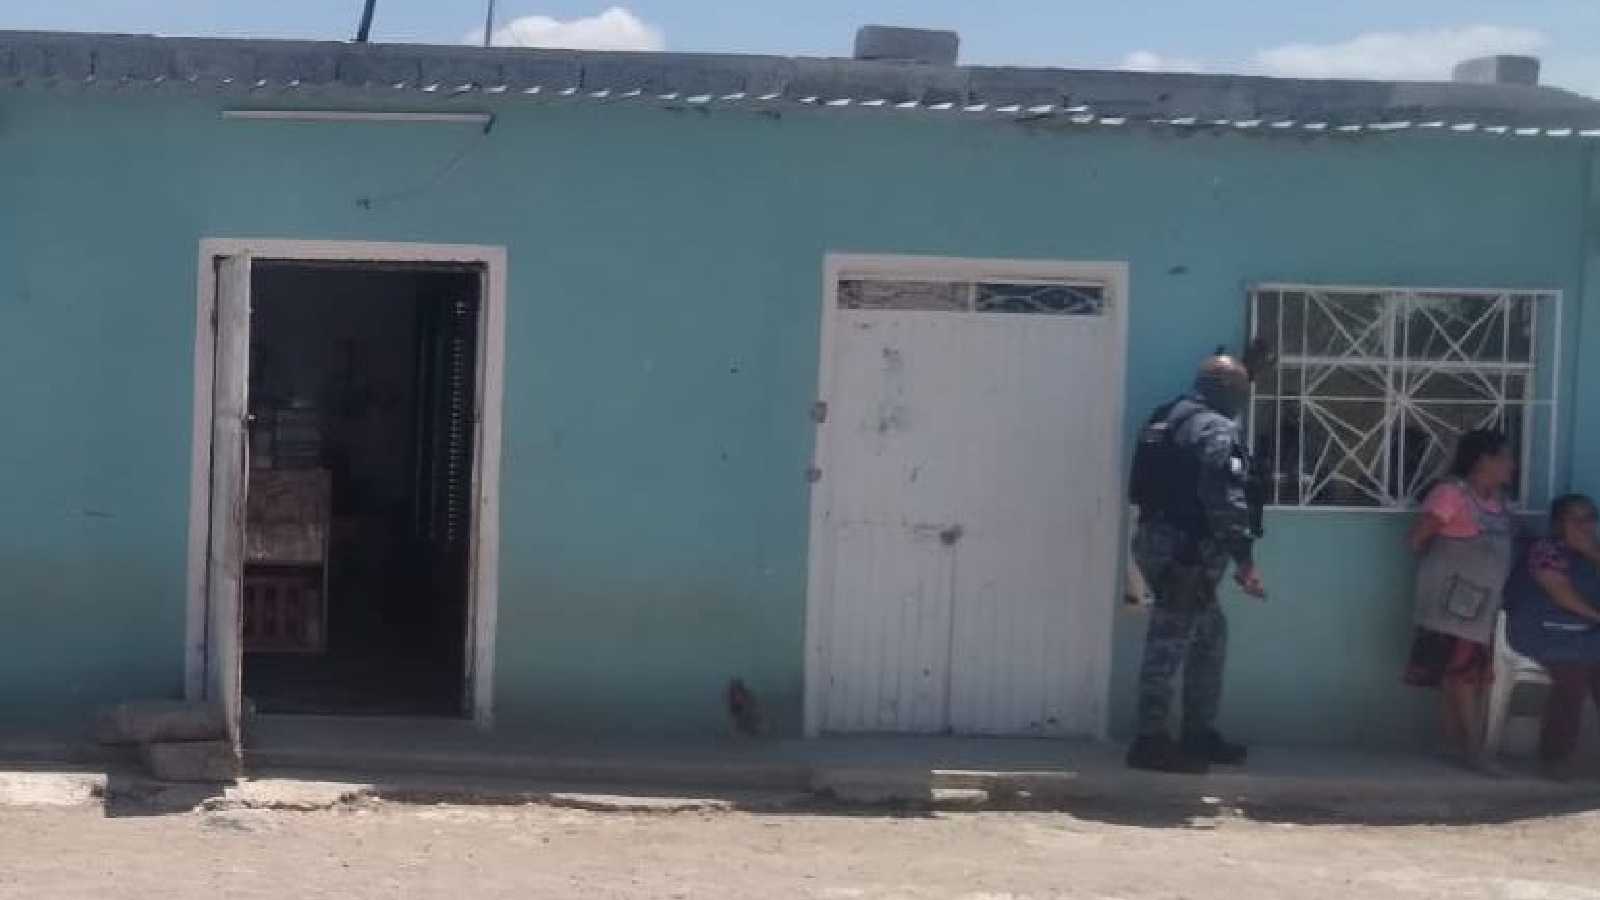 El homicidio ocurrió en una vivienda de la comunidad de Santiaguillo. |Foto: Imagen